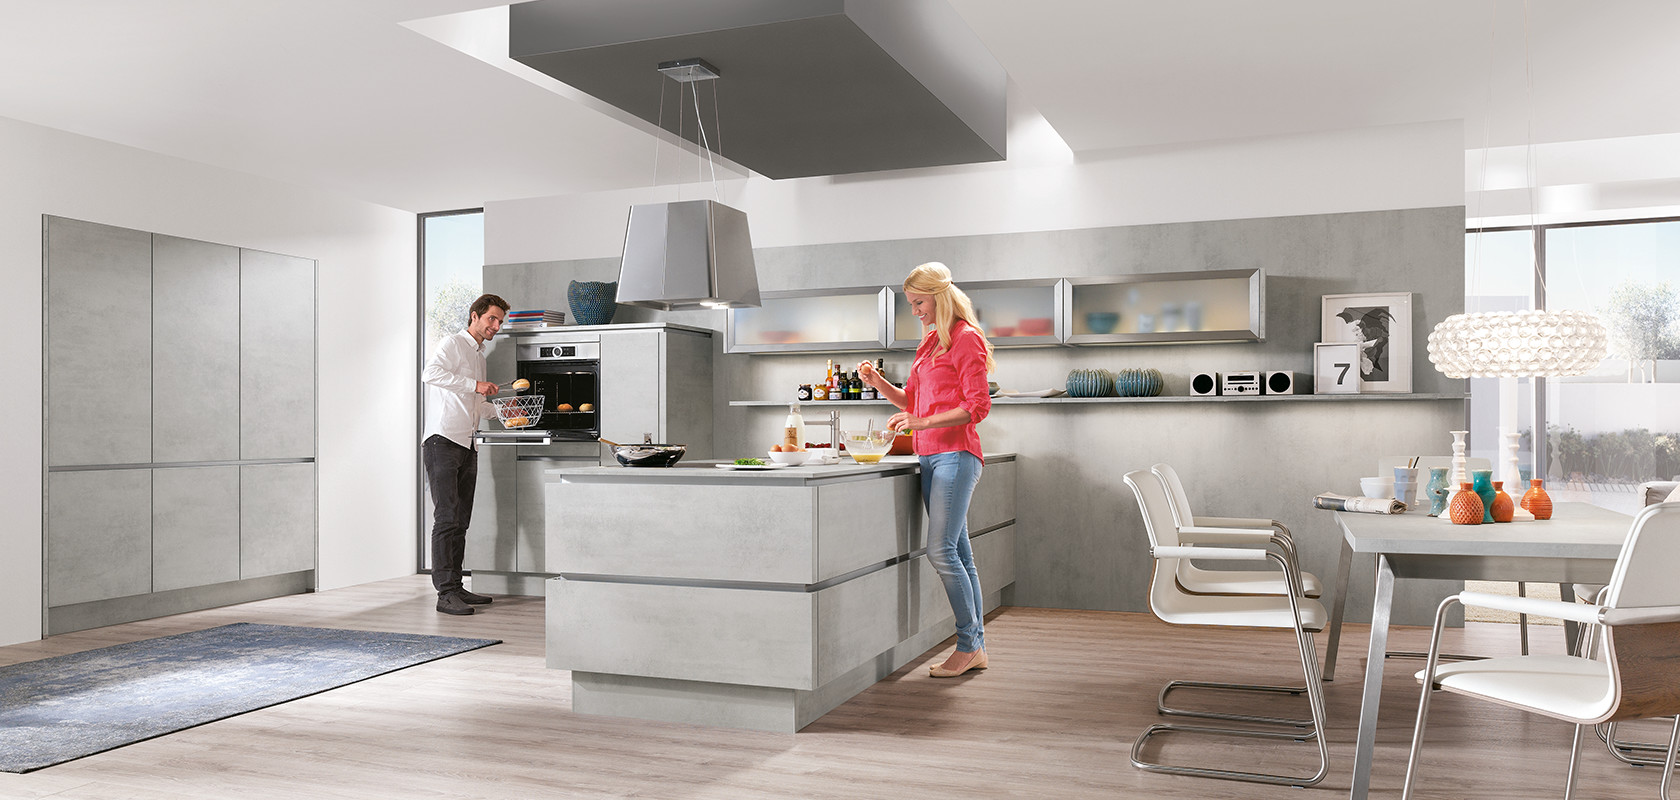 Un design moderno della cucina con due persone che cucinano, caratterizzato da mobili eleganti, elettrodomestici in acciaio inossidabile e un layout luminoso e spazioso.